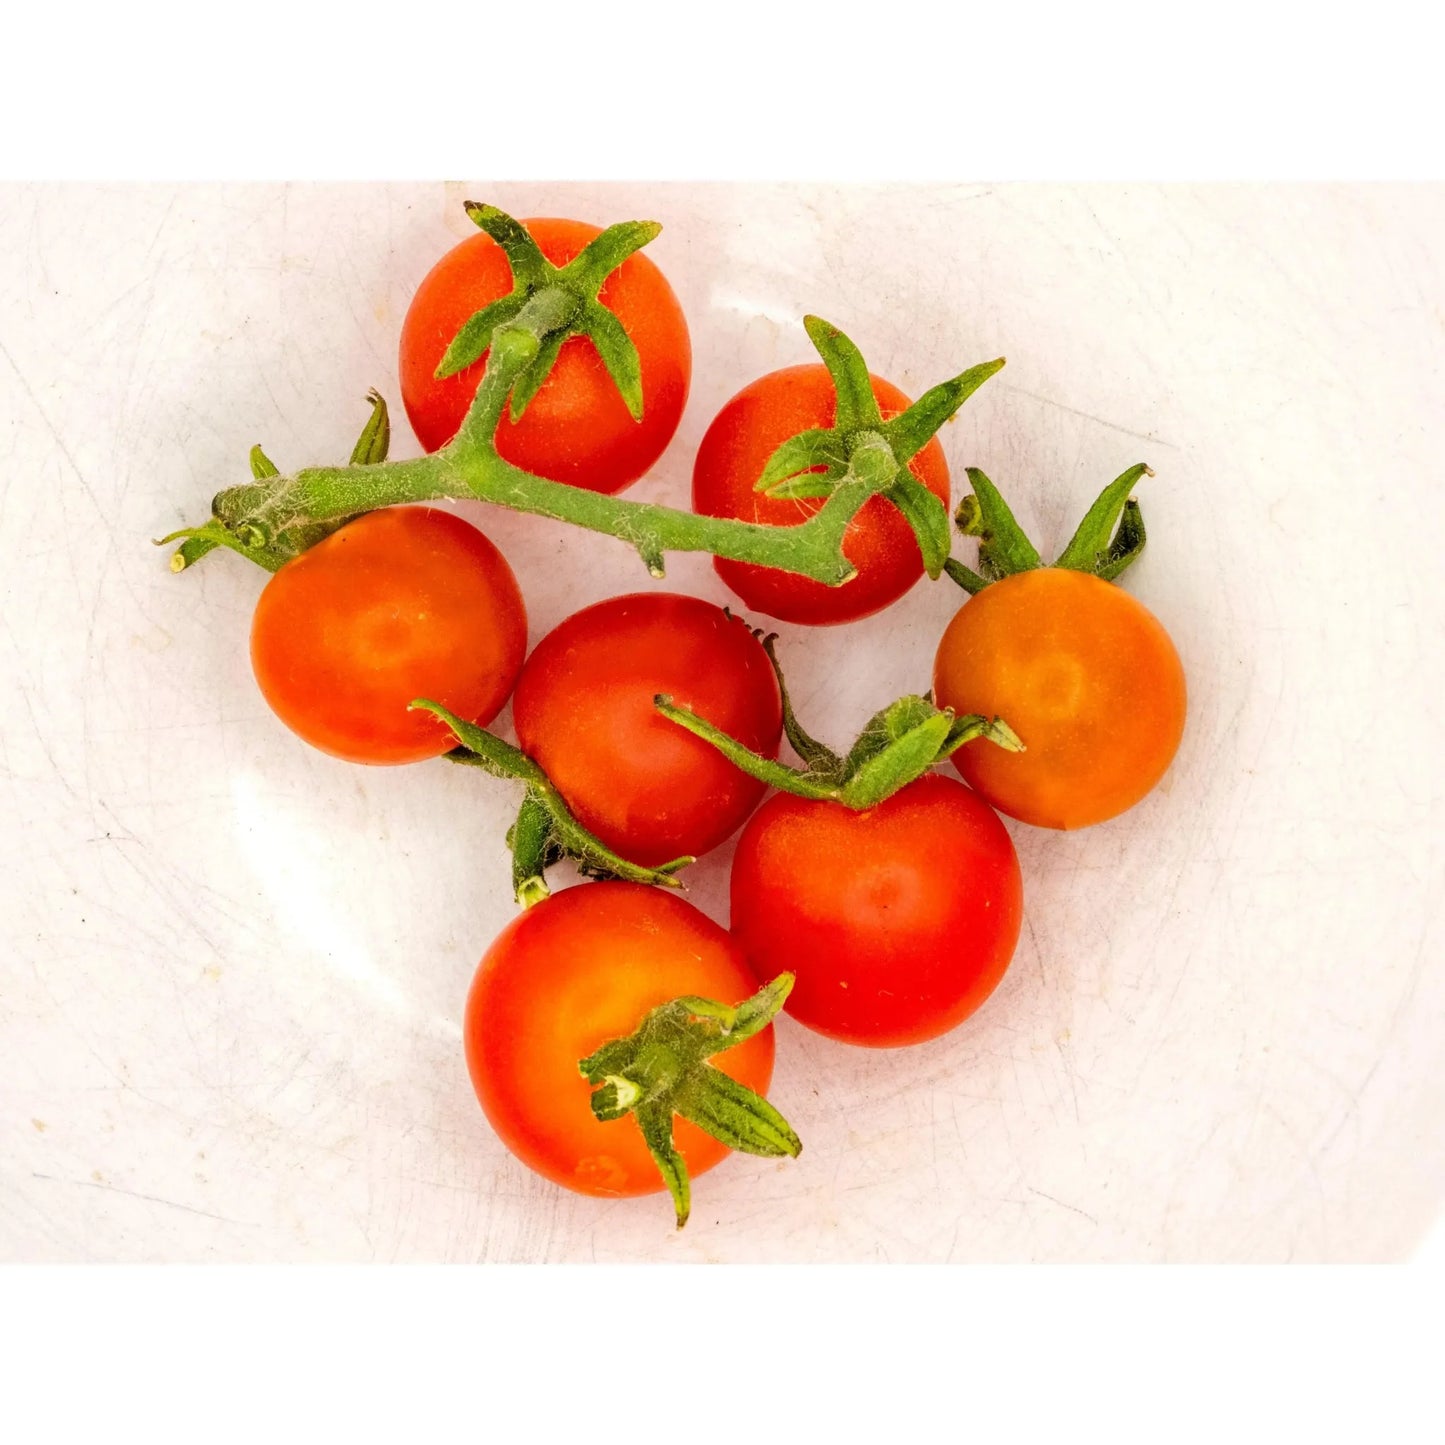 Soil - Grown Tomato Cherry - Nutrient Farm